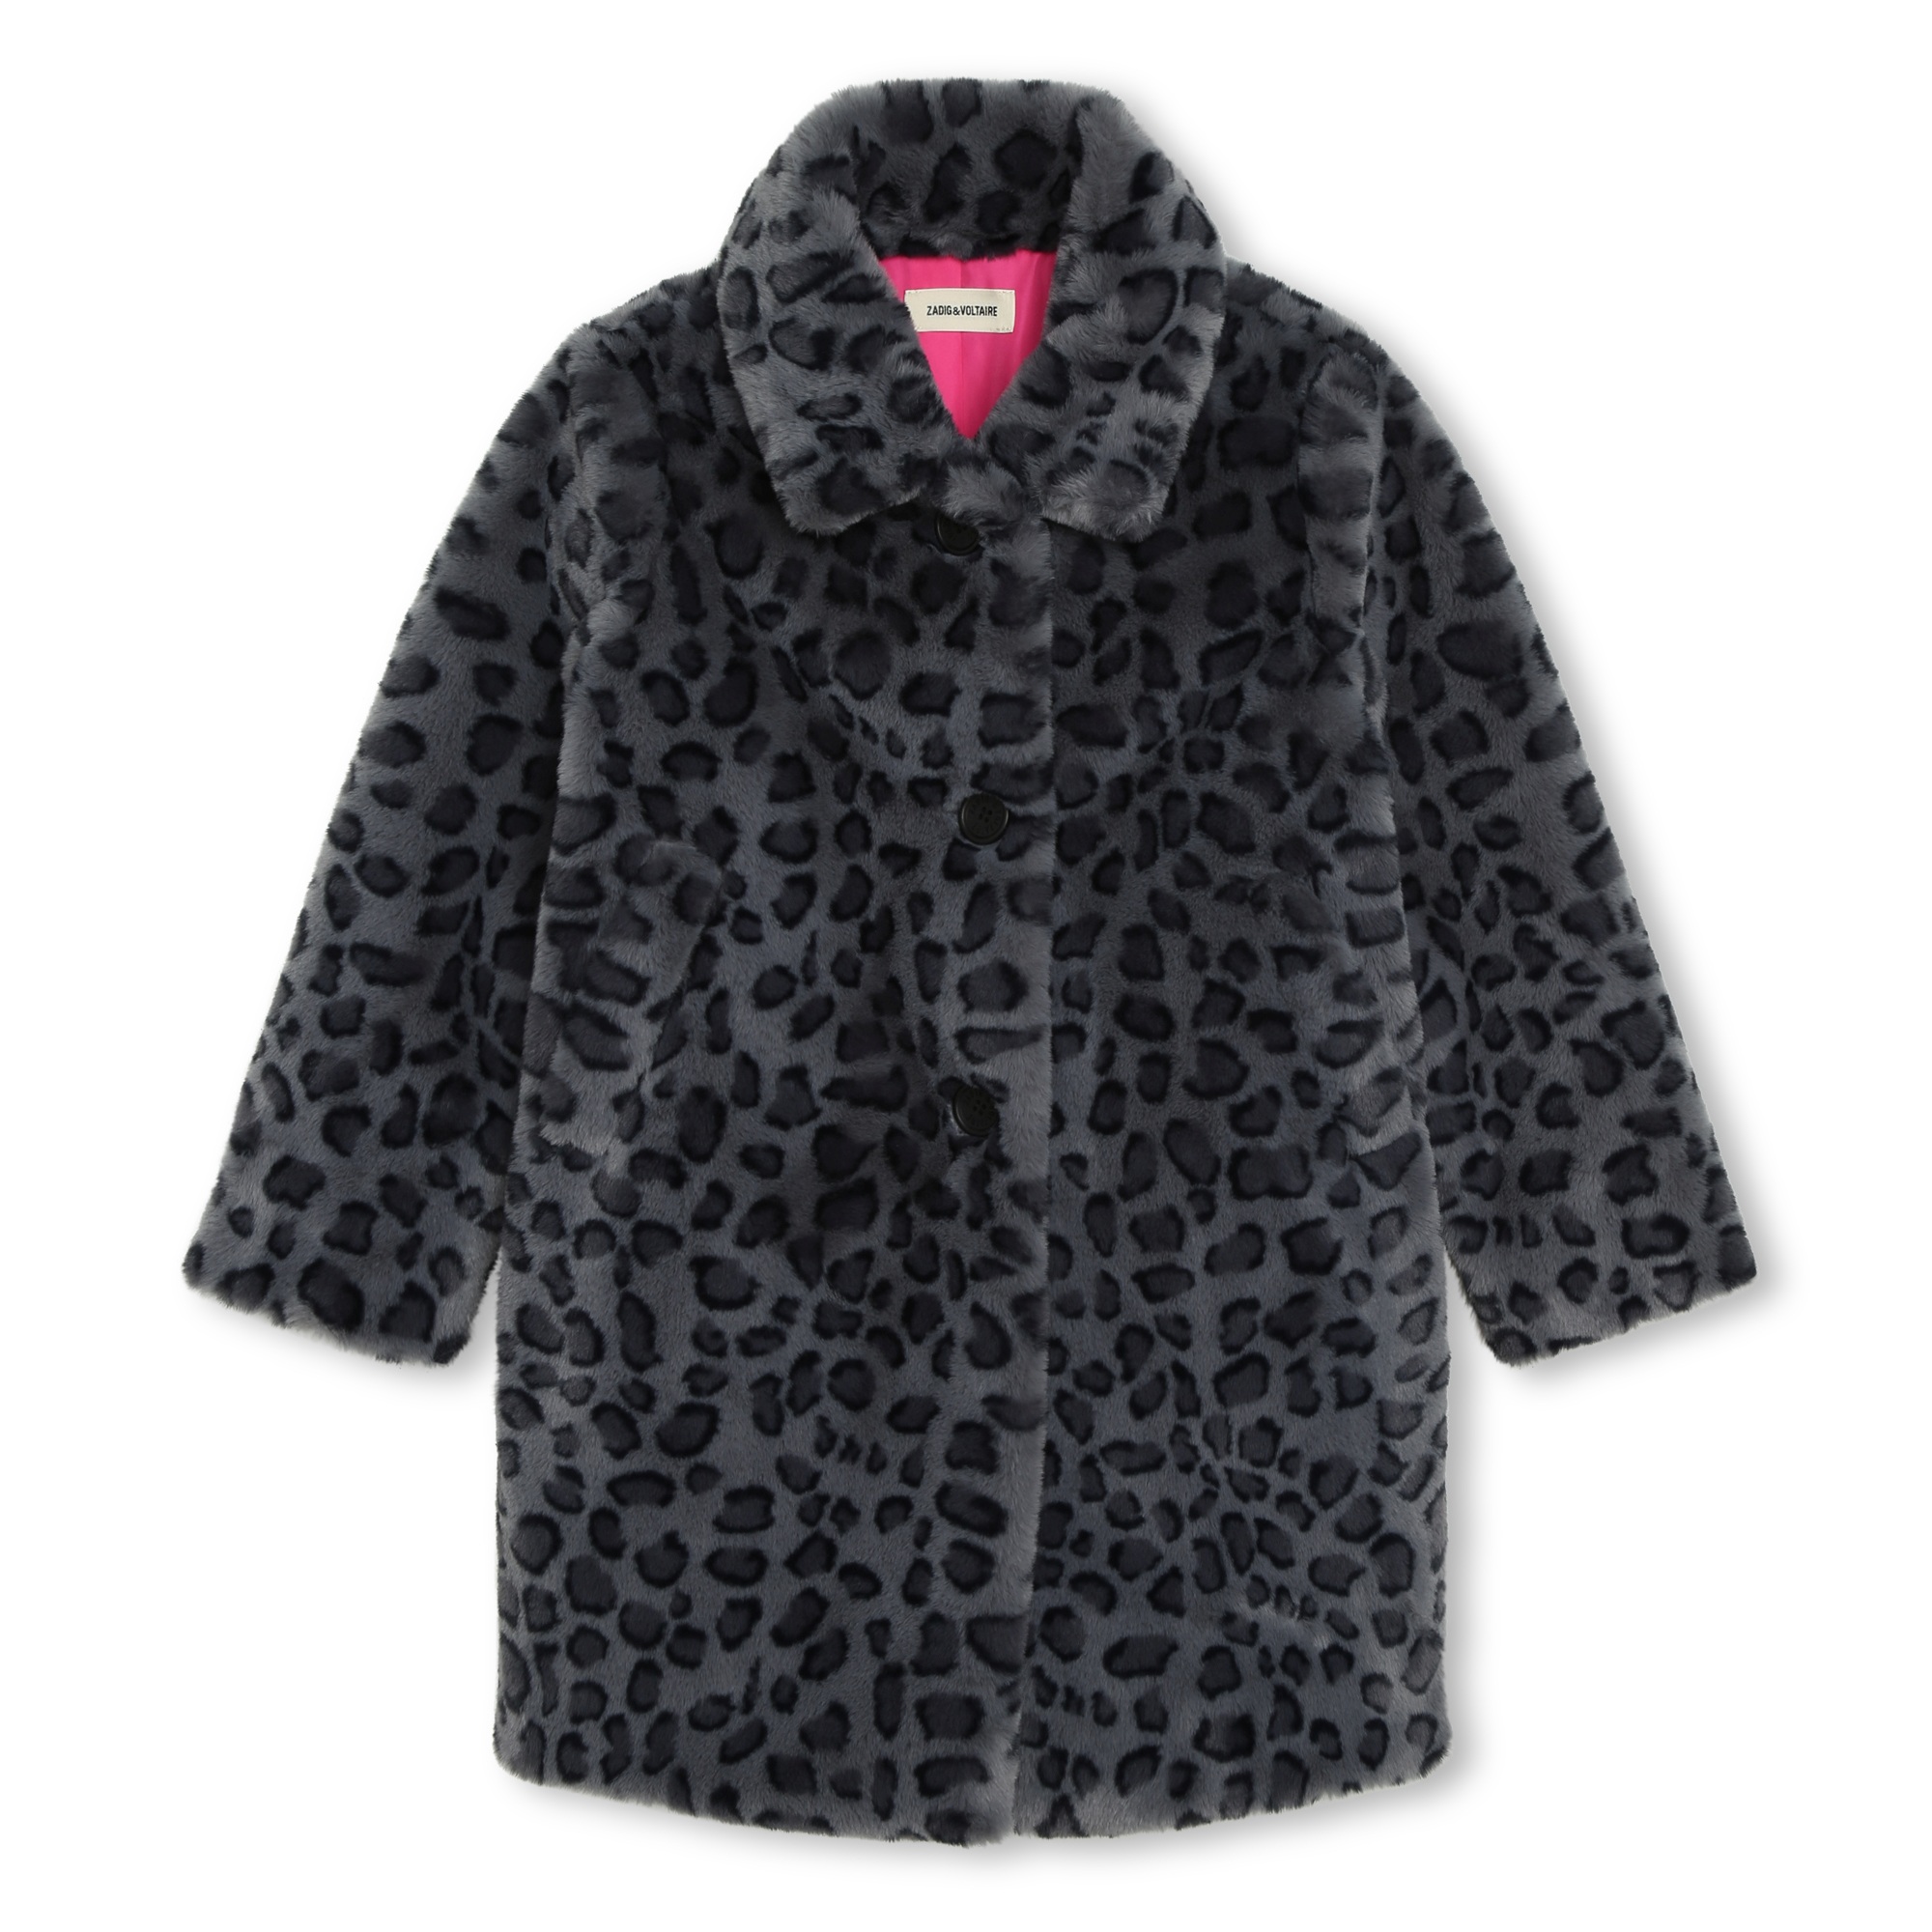 Fluffy fleece coat ZADIG & VOLTAIRE for GIRL